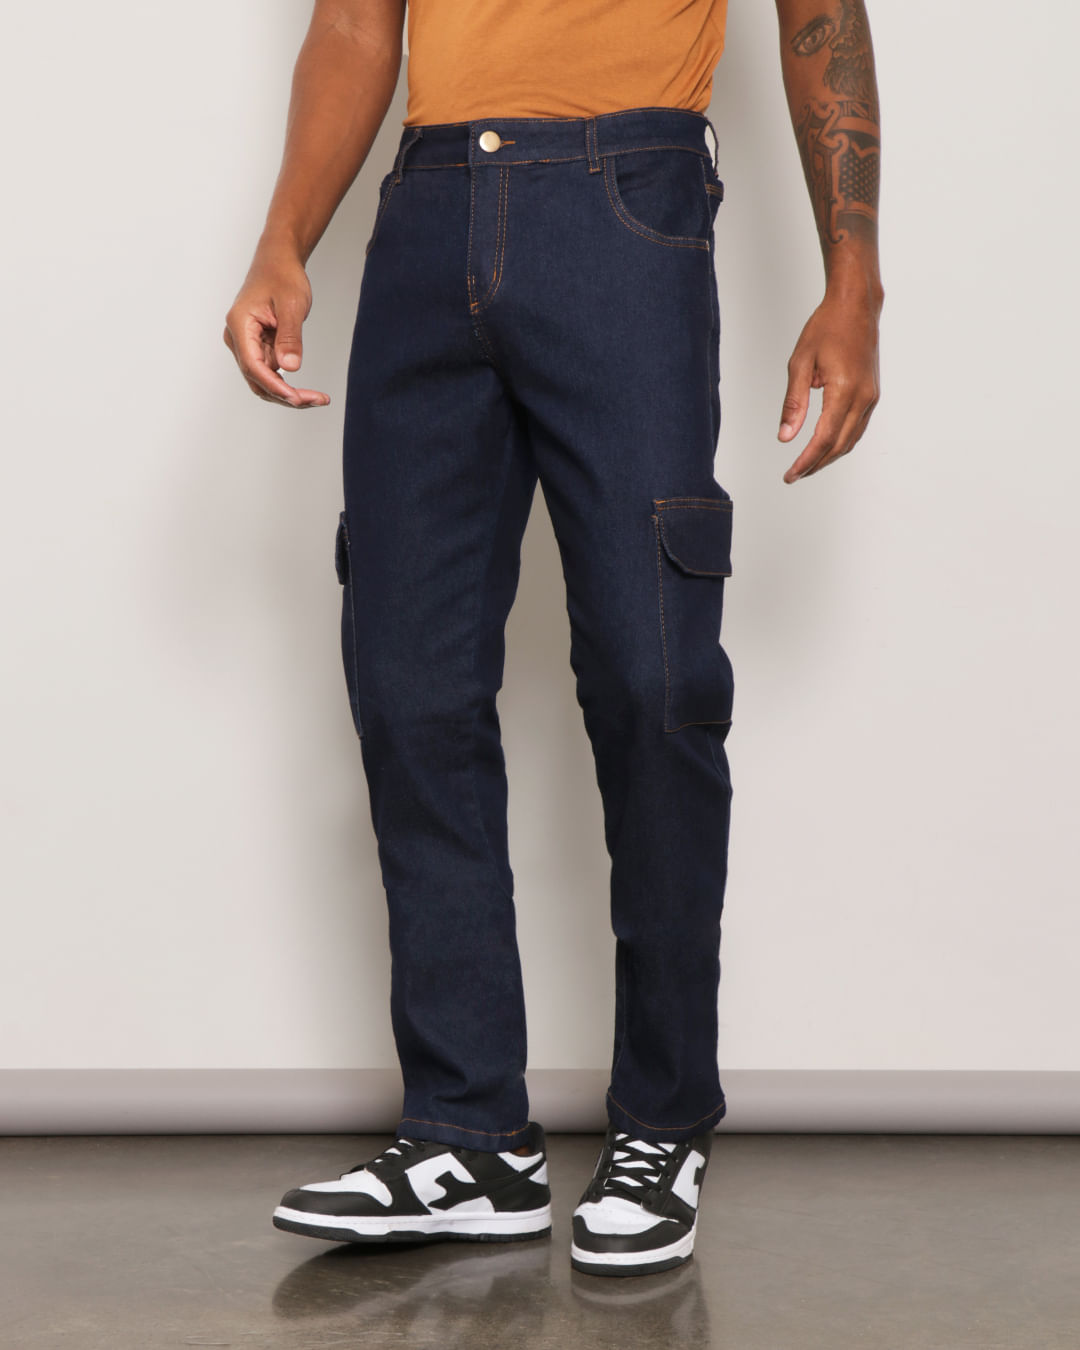 Calça jeans masculina reta, composta por bolsos frontais, bolso